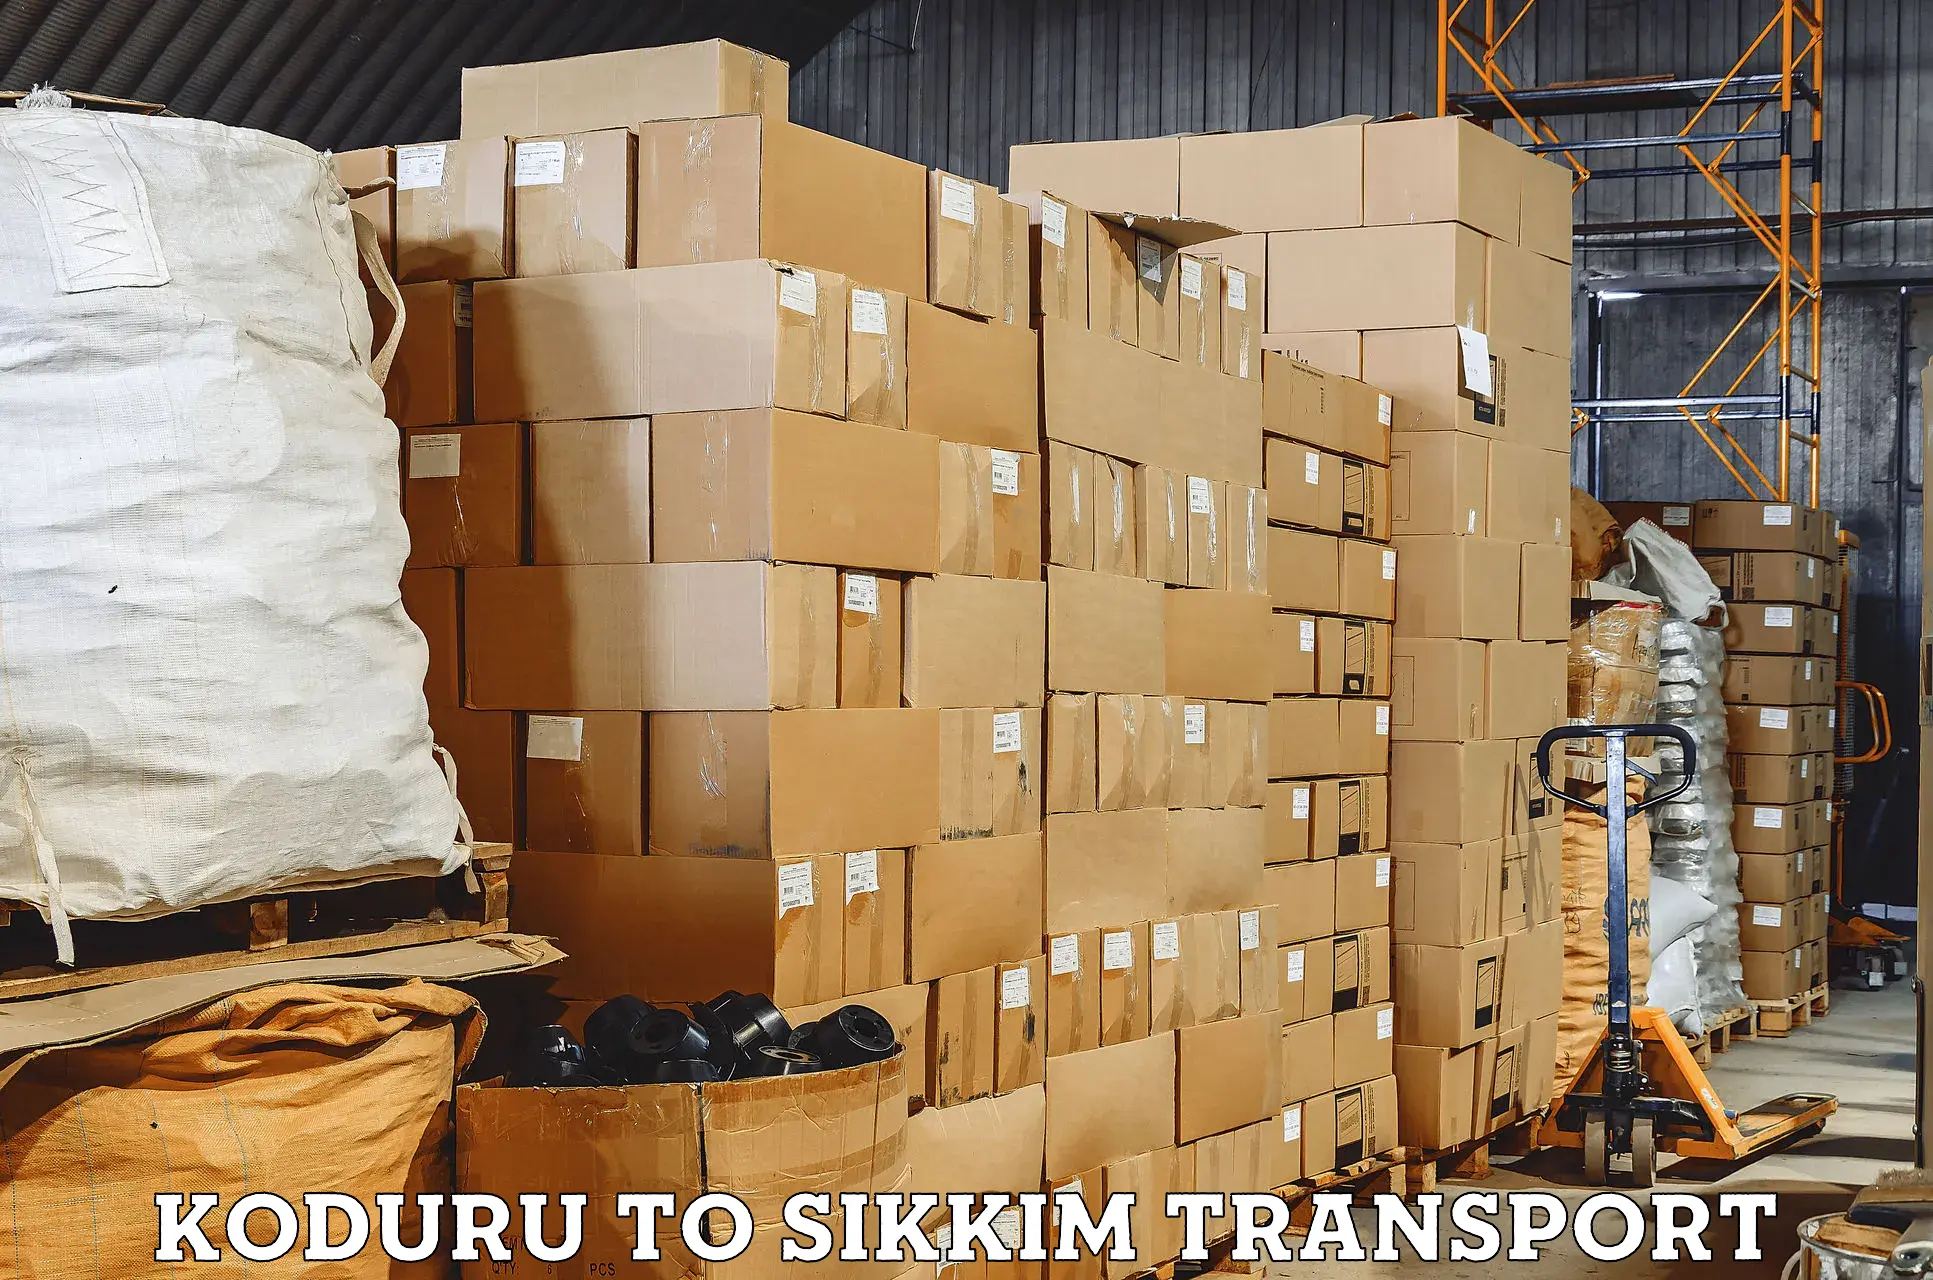 Pick up transport service Koduru to Pelling